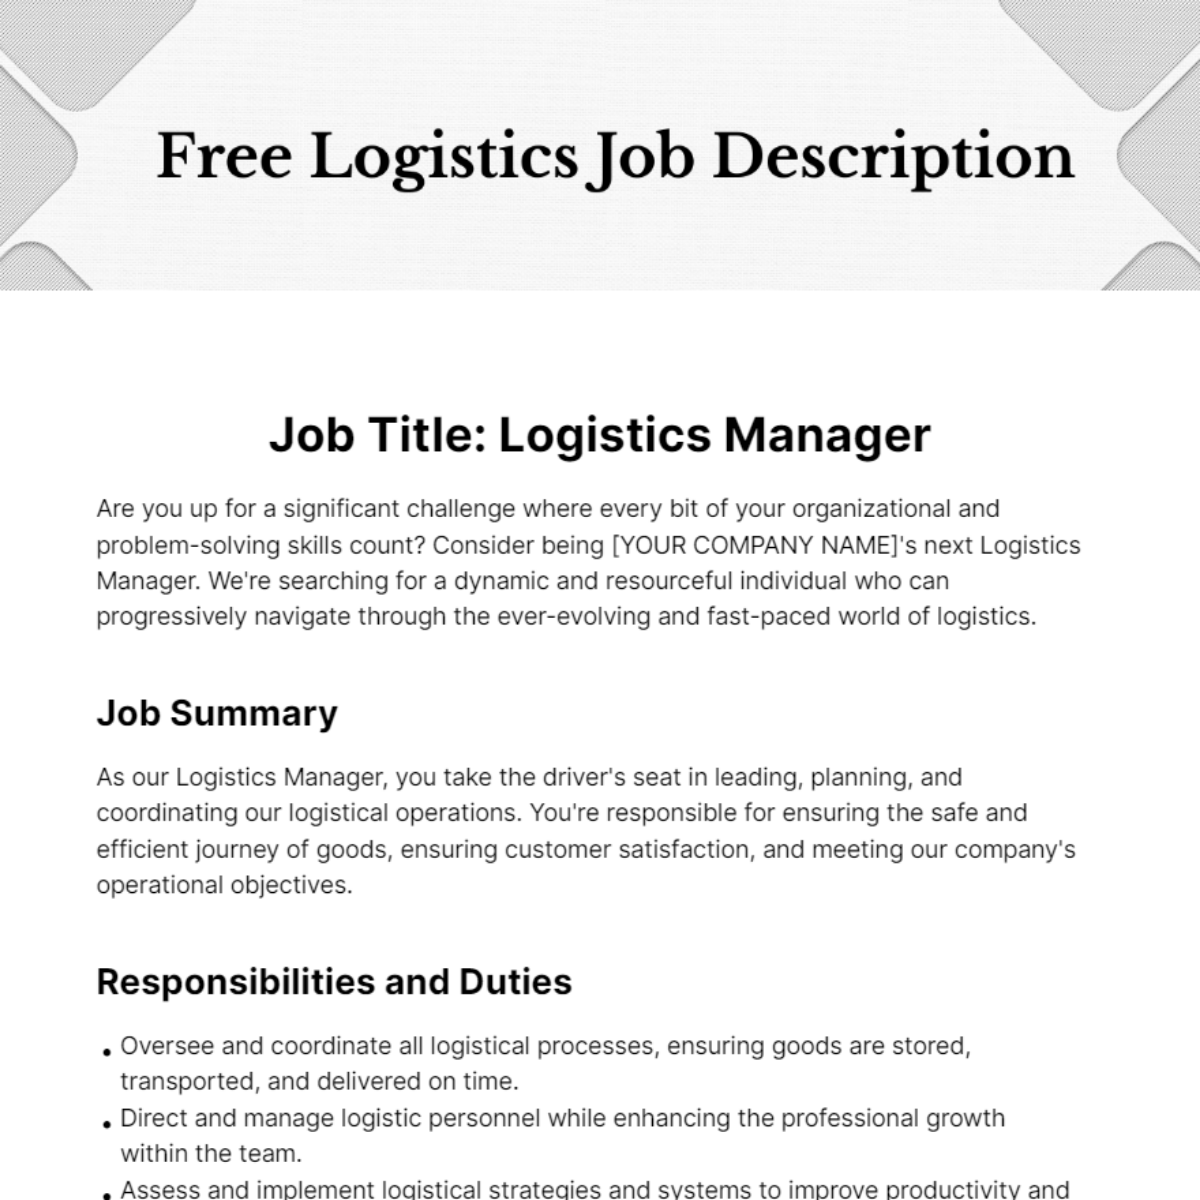 Free Logistics Job Description Template